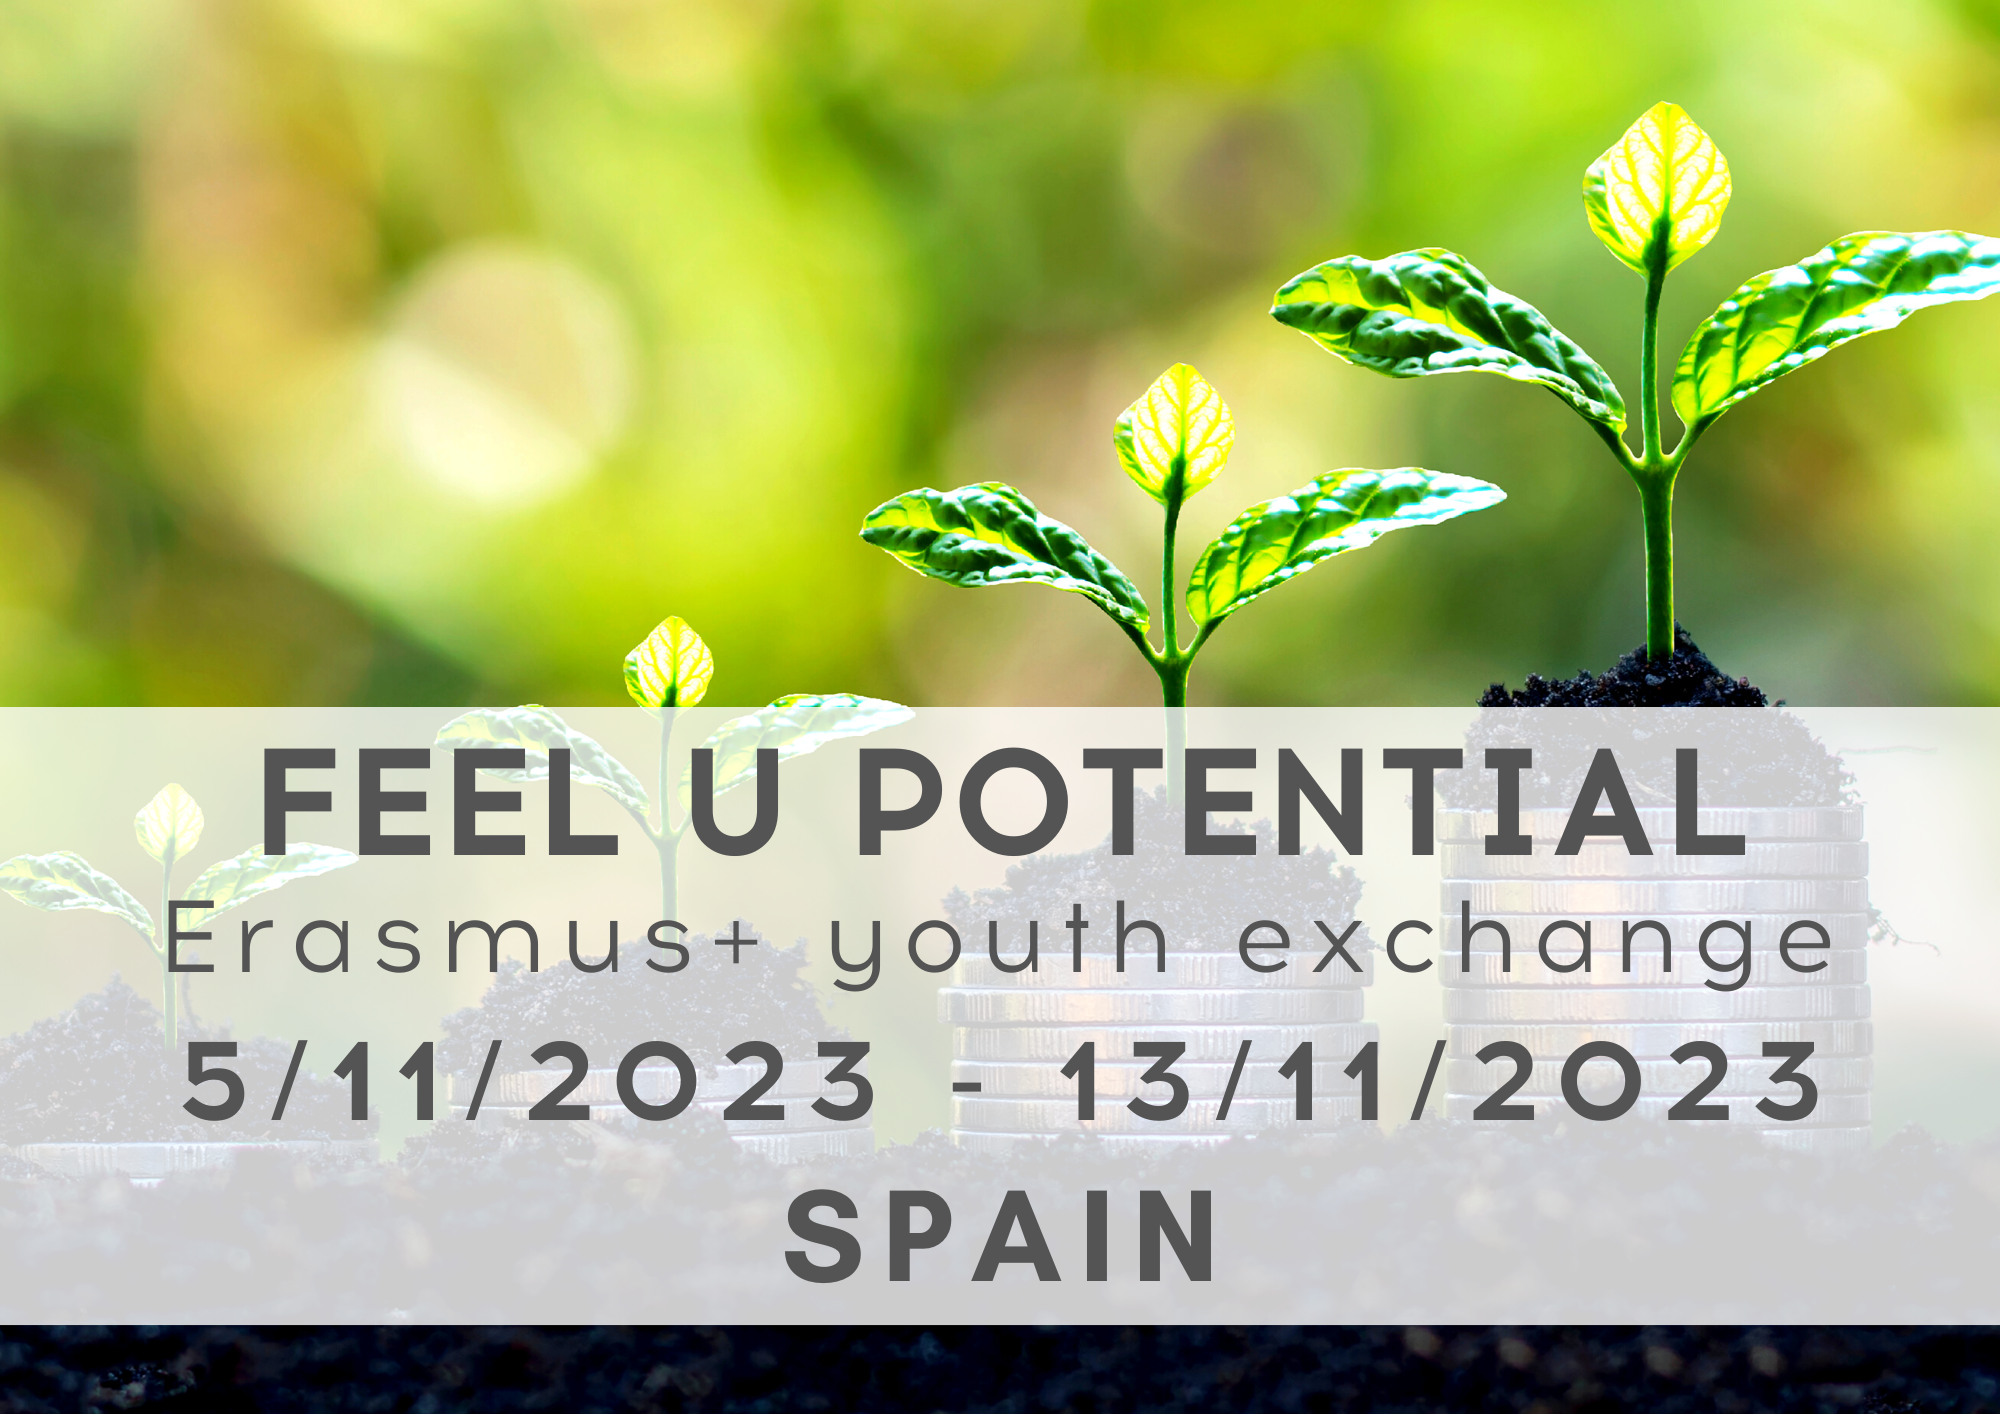 Erasmus+ Youth Exchange FEEL U POTENTIAL, 5-13 November 2023, Spain